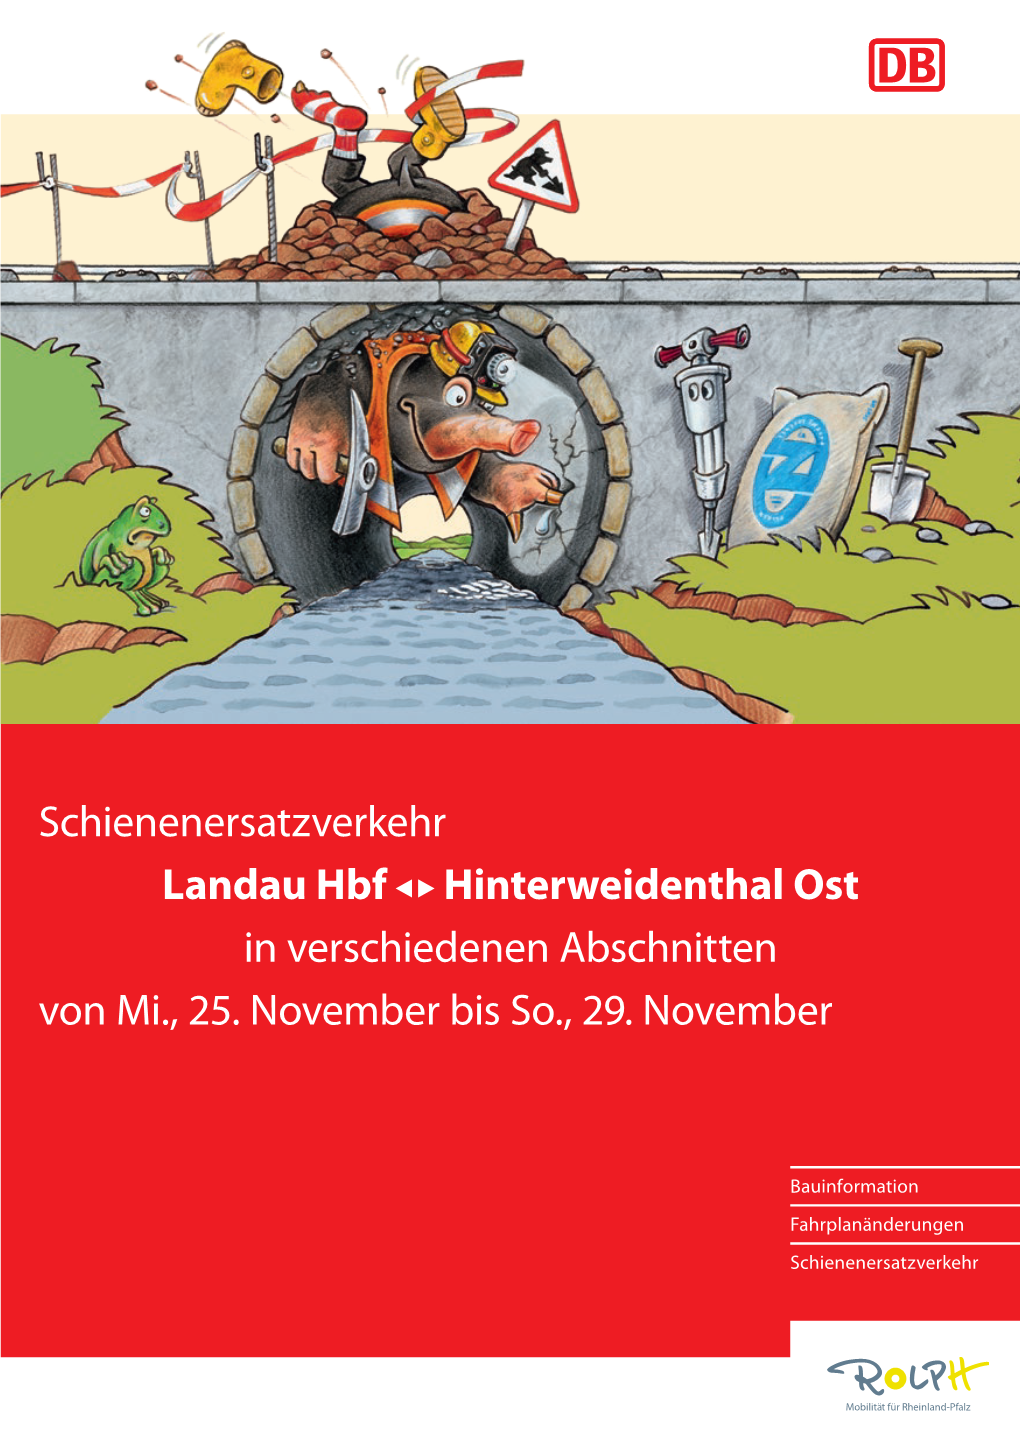 Schienenersatzverkehr Landau Hbf Hinterweidenthal Ost in Verschiedenen Abschnitten Von Mi., 25